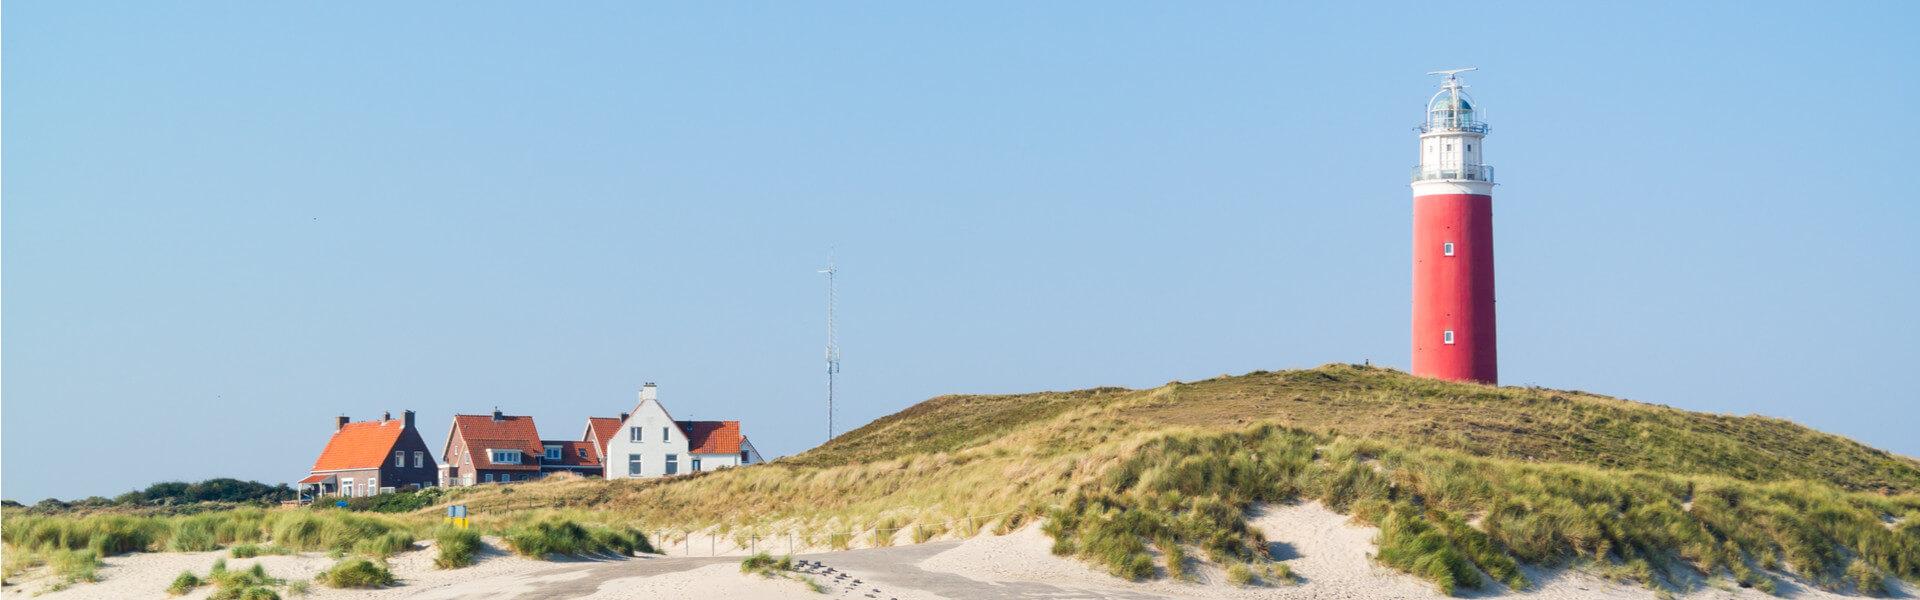 Ilha Texel